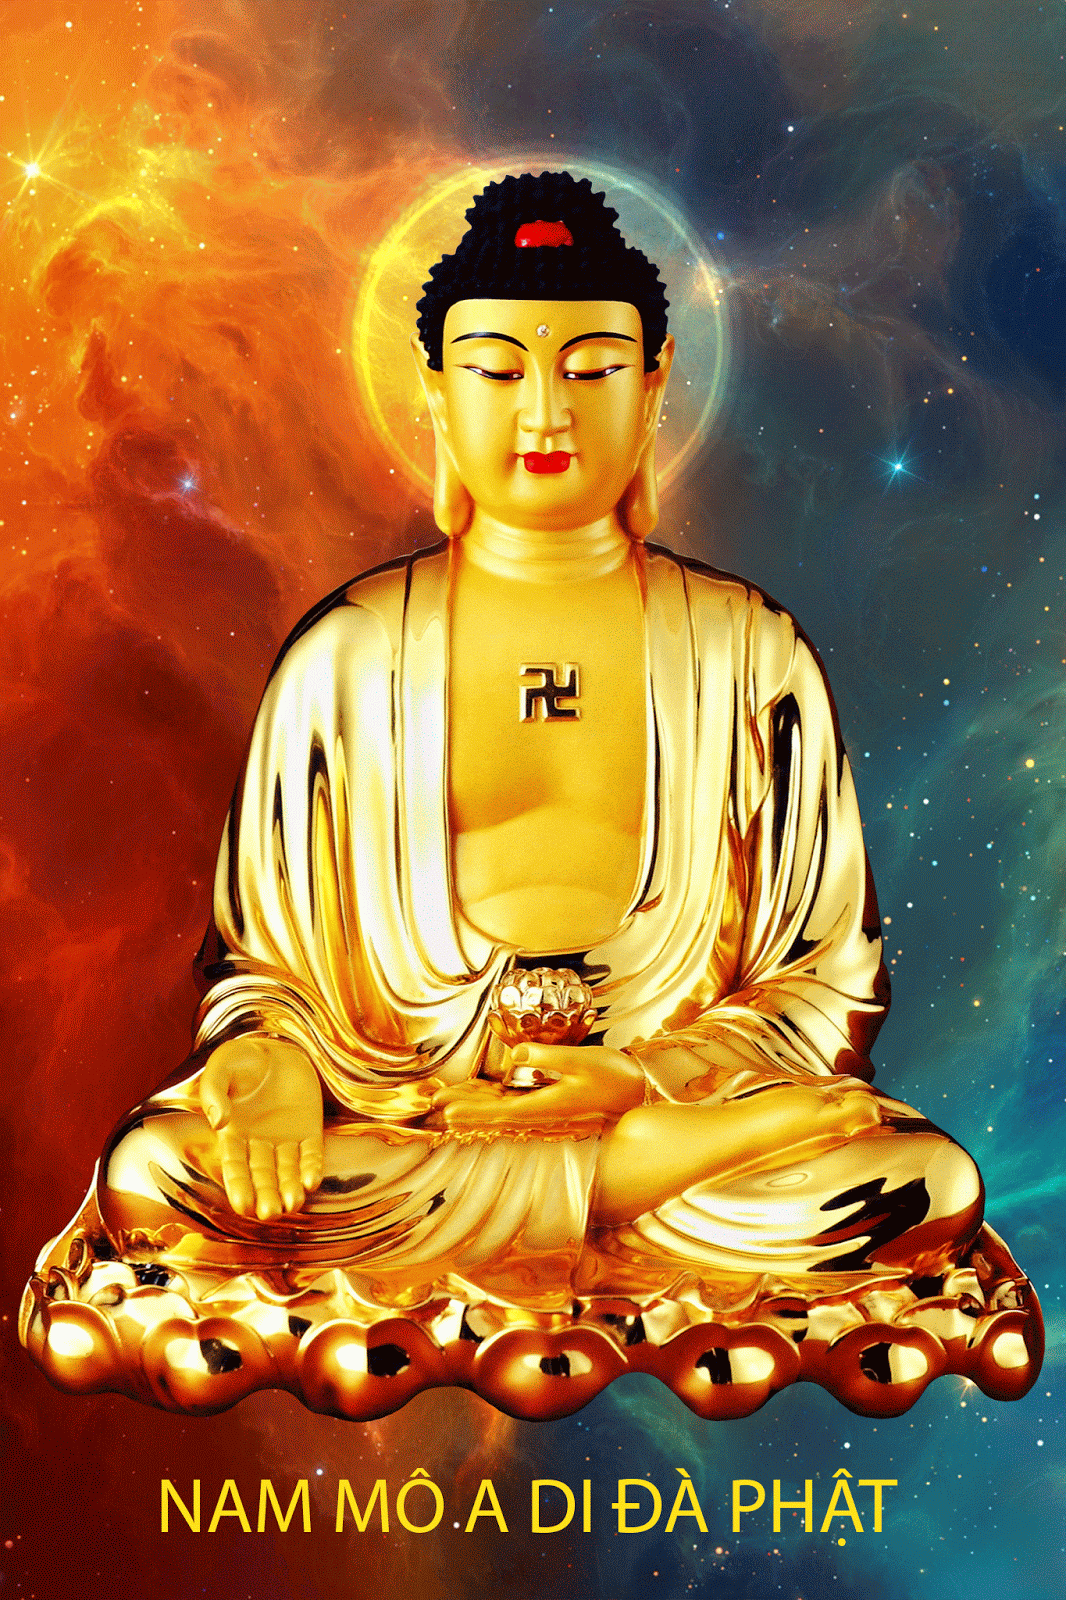 Phật Tử Tỉnh Bà Rịa Vũng Tàu: Hãy chiêm ngưỡng bức ảnh đặc biệt về Phật Tử Tỉnh tại Bà Rịa Vũng Tàu, nơi mà tinh thần hòa mình vào thiền định được tăng cường. Với khung cảnh thiên nhiên tuyệt đẹp, đây sẽ là một trải nghiệm thiêng liêng và thanh tịnh đến từ tâm hồn.